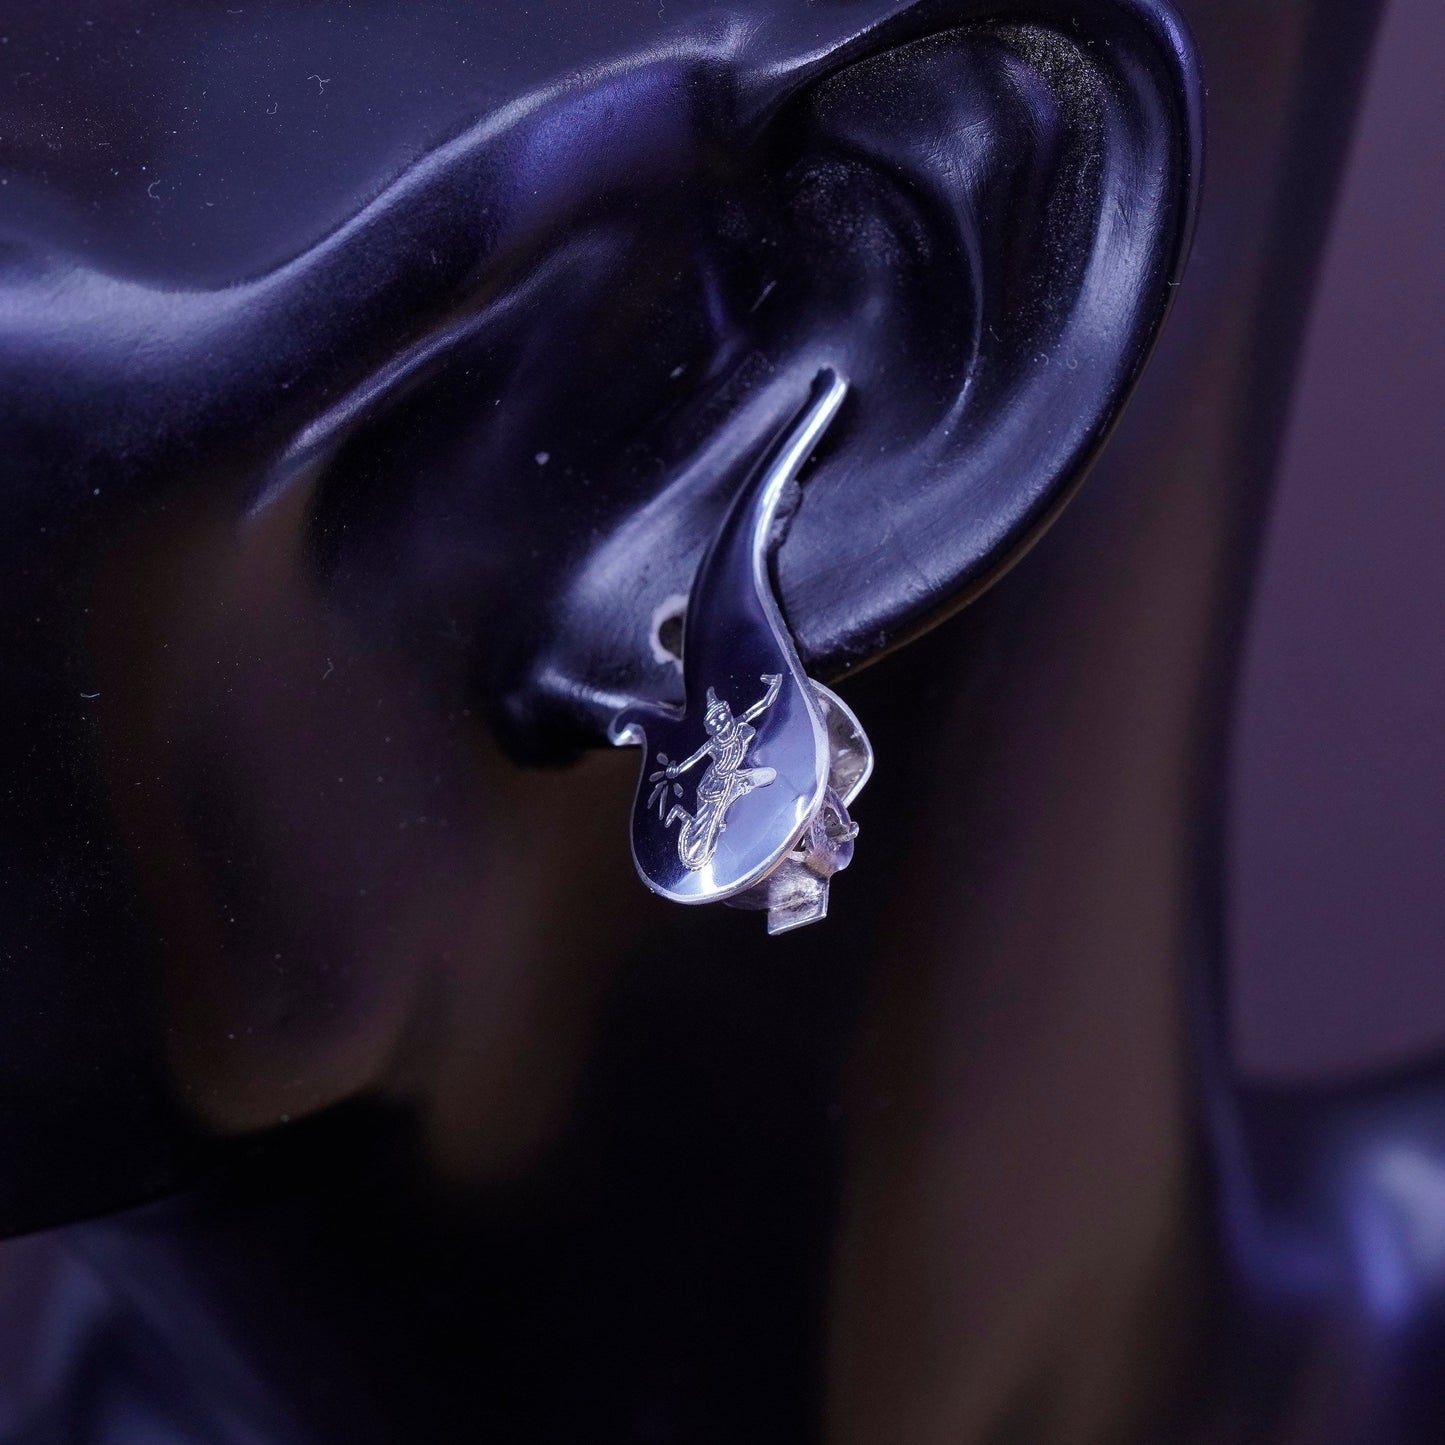 Siam sterling silver clip on earrings, 925 teardrop earrings, niello, Siam